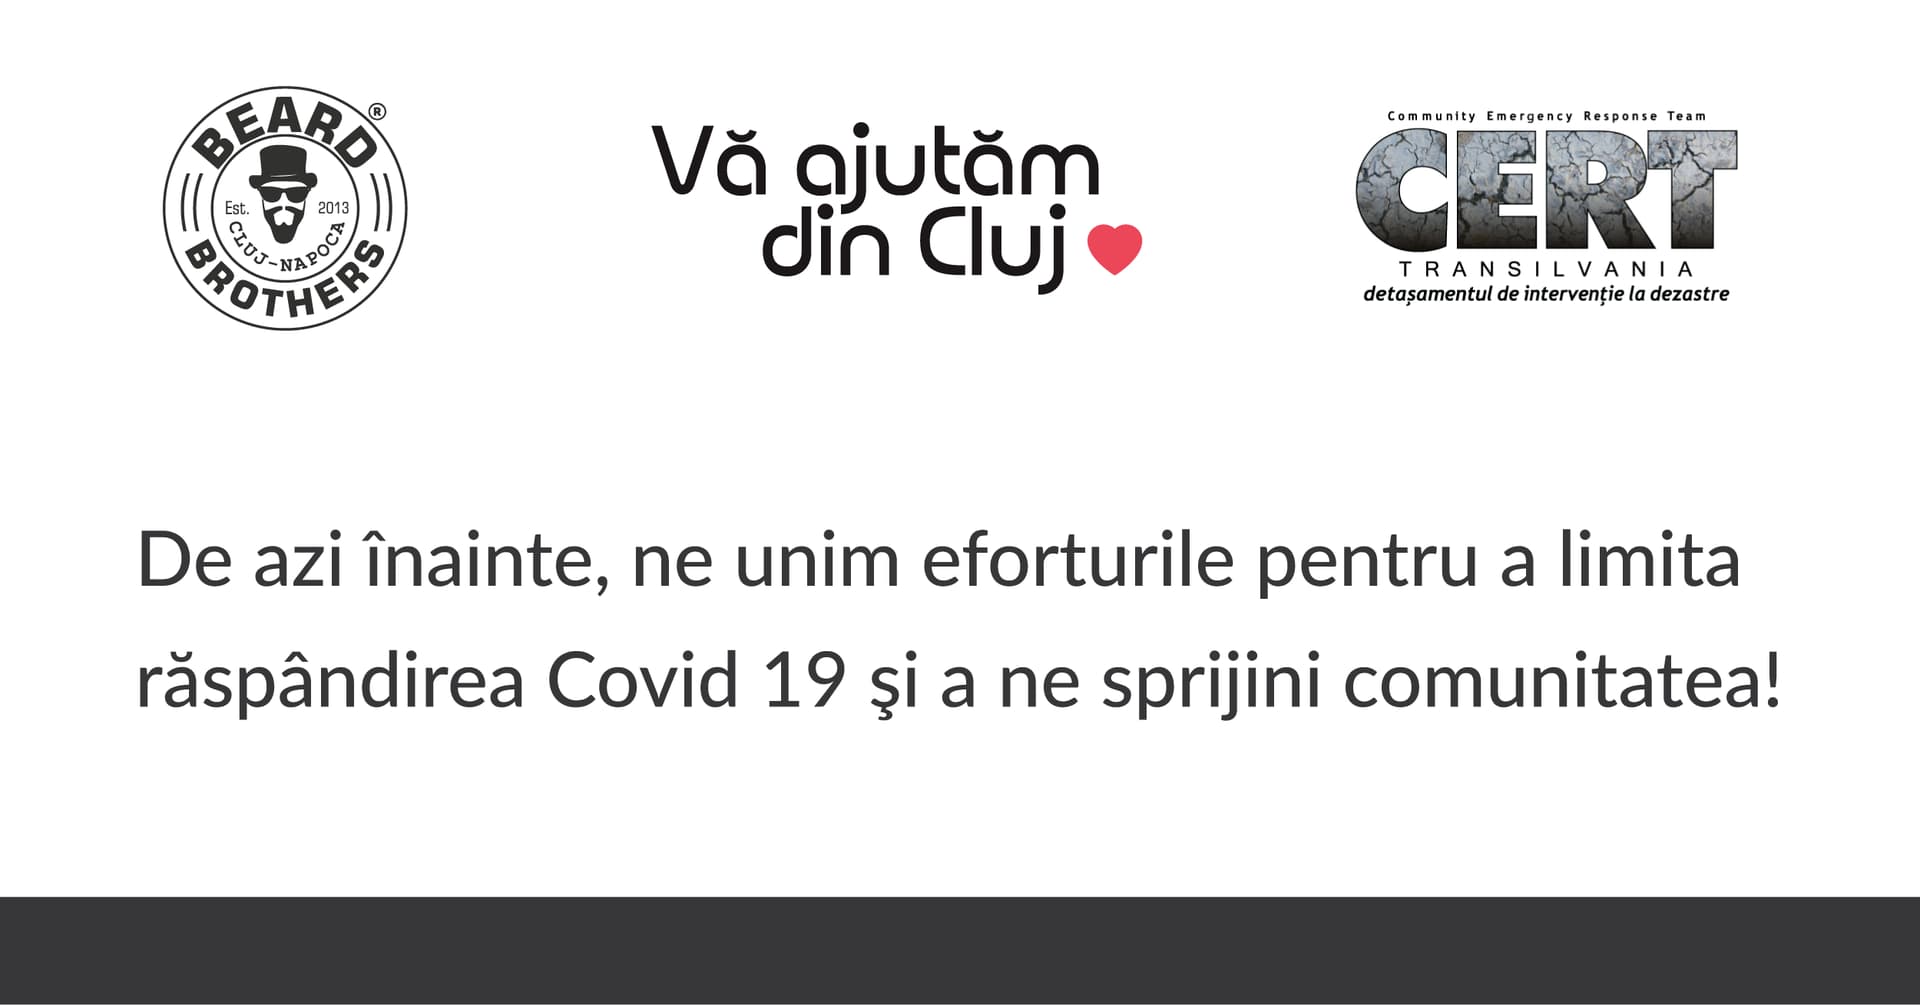 Beard Brothers, Vă ajutăm din Cluj și CERT Transilvania își unesc eforturile pentru a limita răspândirea Covid 19 și a sprijini comunitatea